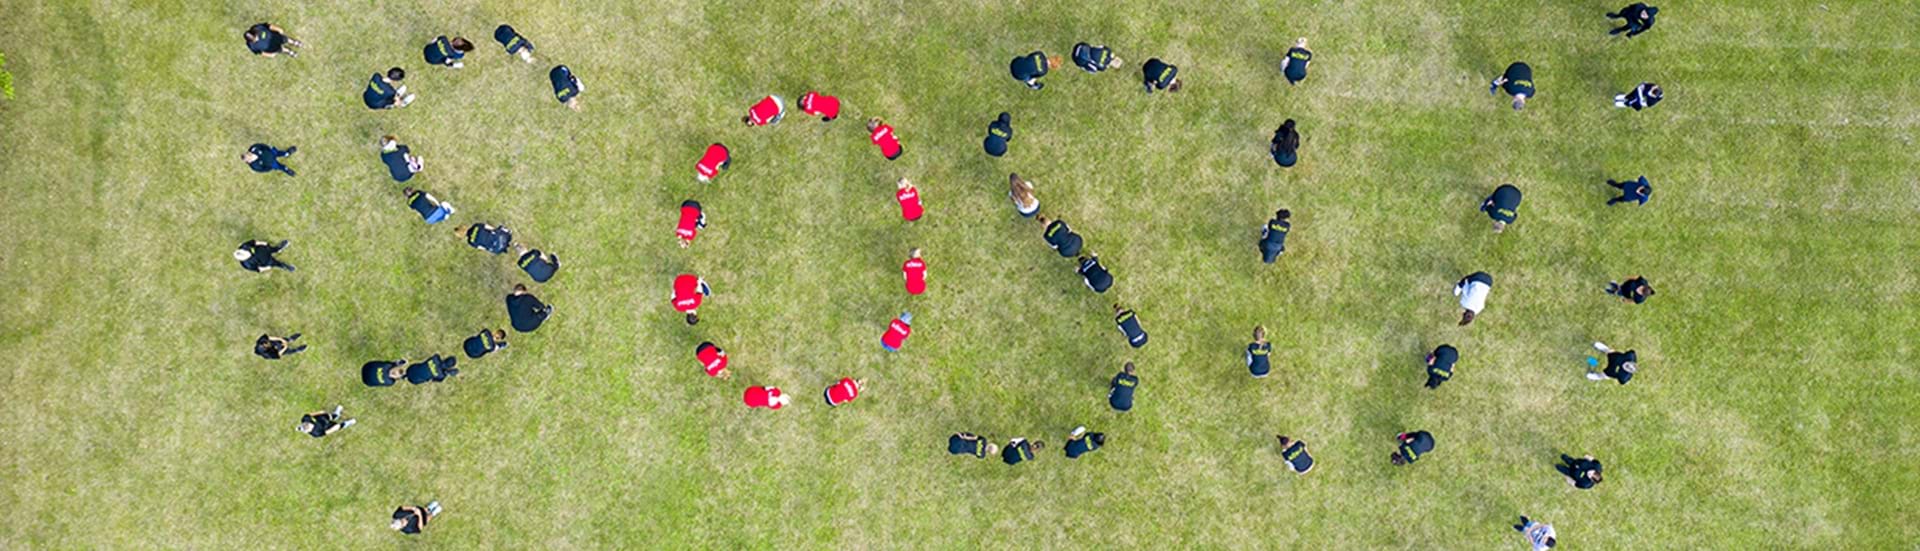 SOSU stavet med elever på en stor græsplæne og fotograferet fra oven. 